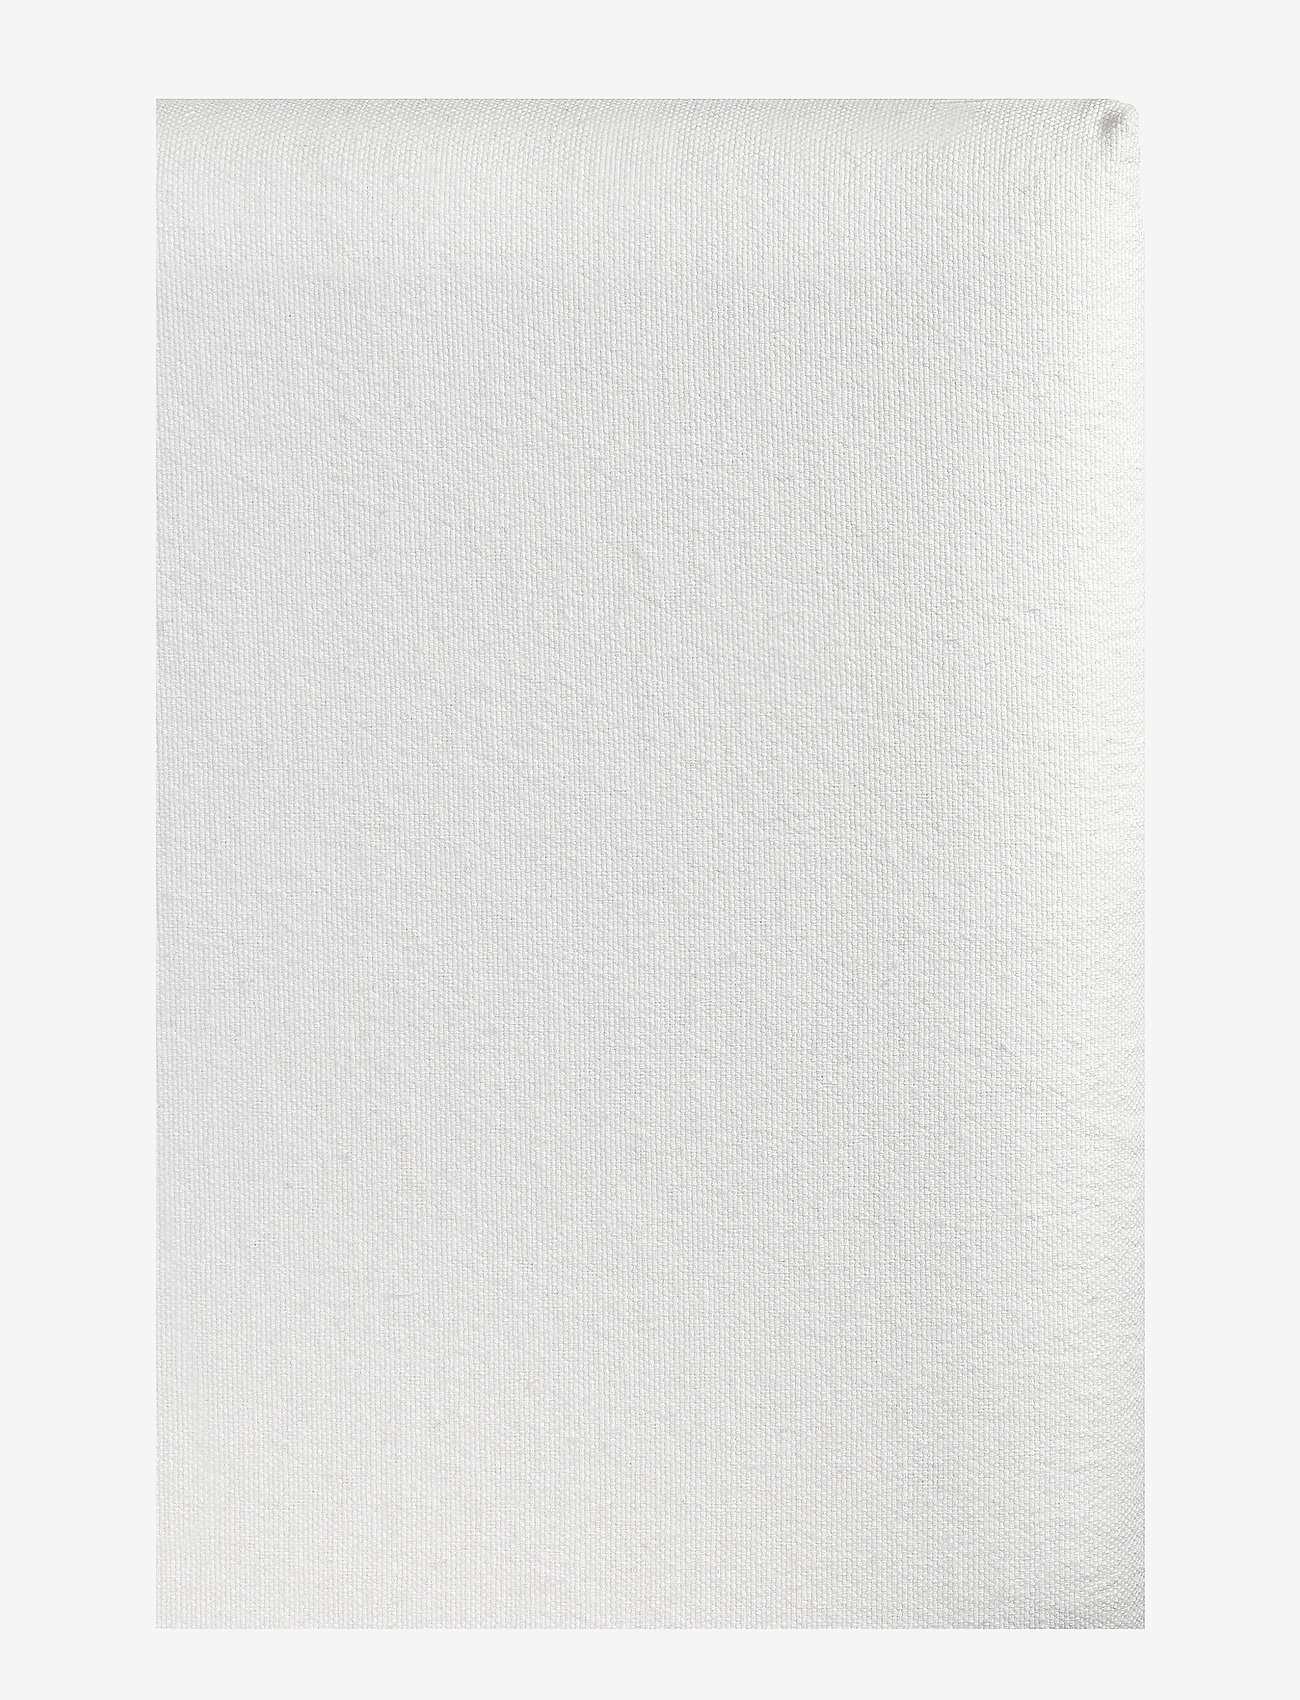 Himla - Weeknight Headboard cover - home - white - 0